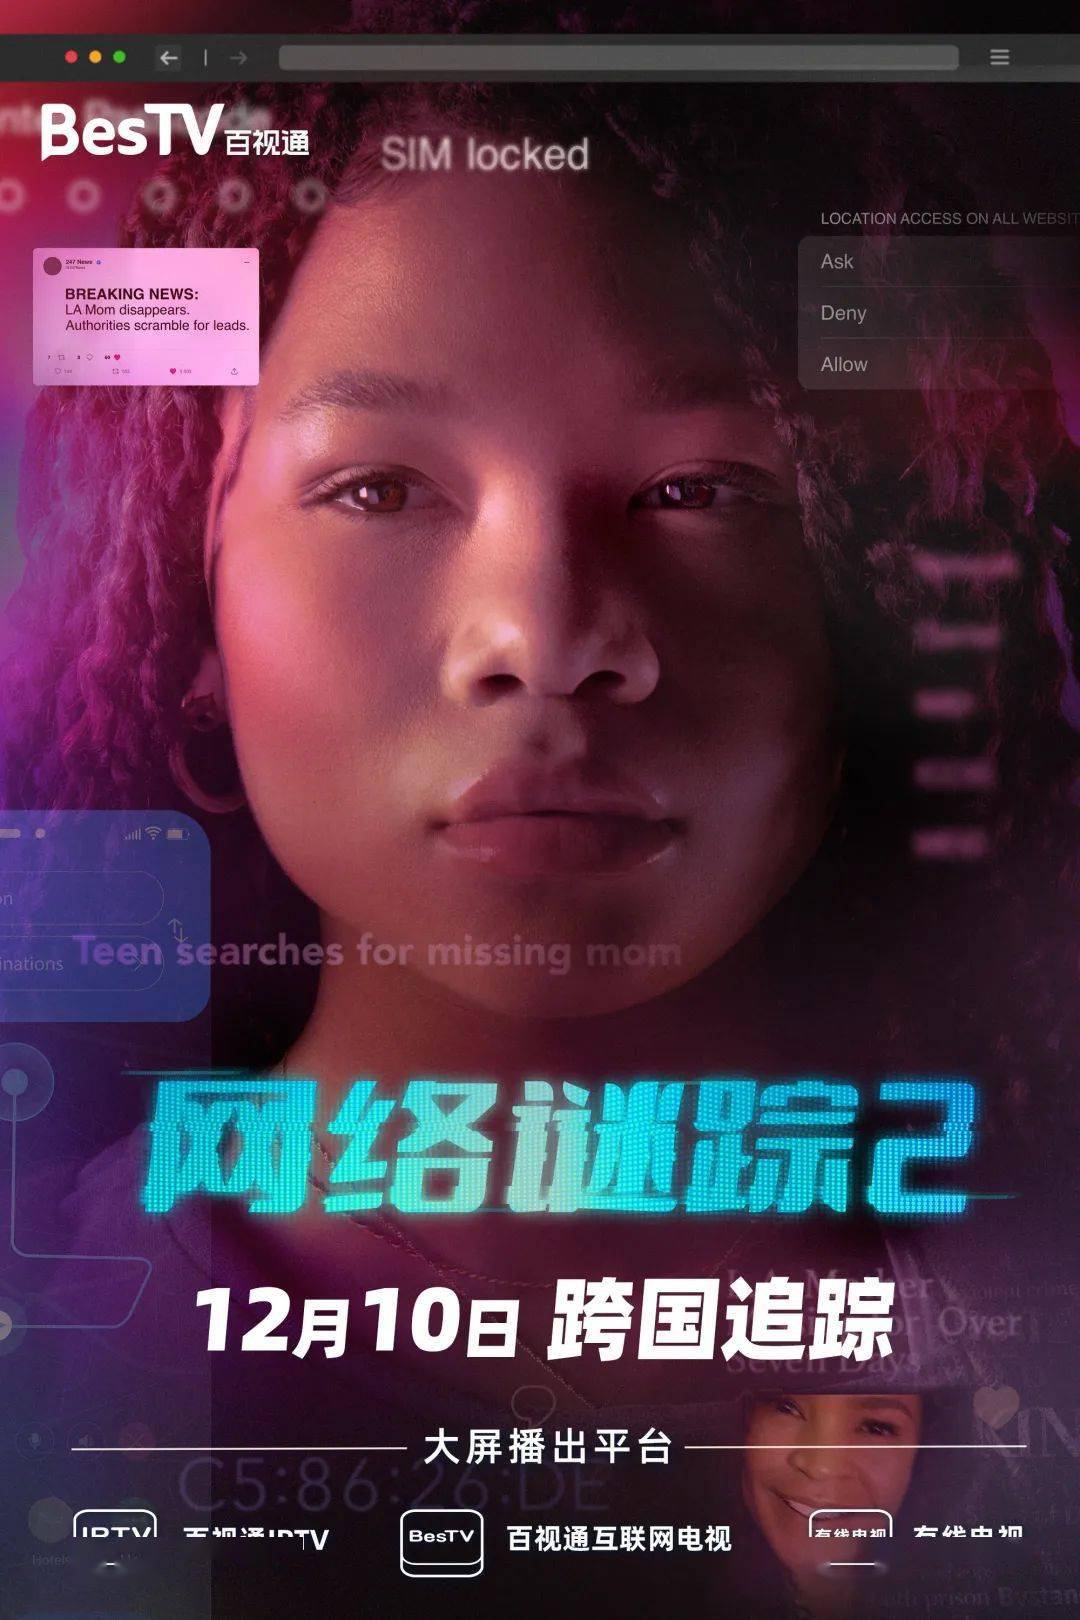 《网络谜踪2》:x世代少女巧用互联网,跨国追寻失踪母亲